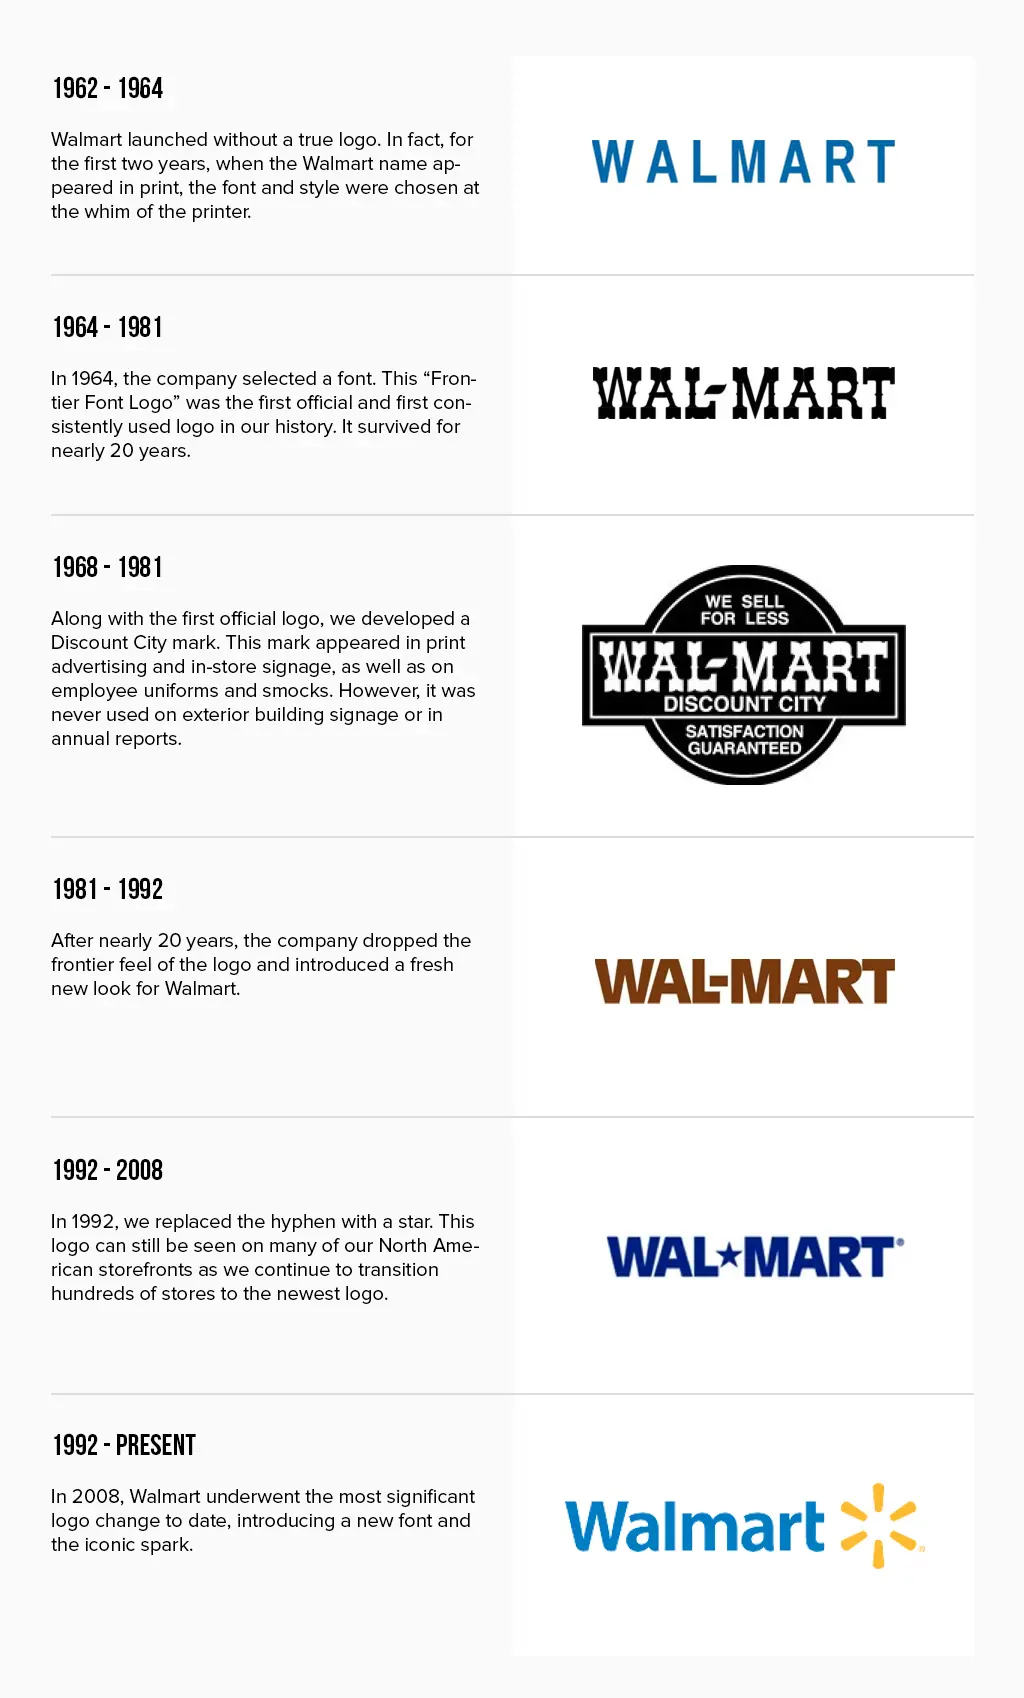 La historia de Walmart y el diseño de su logotipo | Turbologo